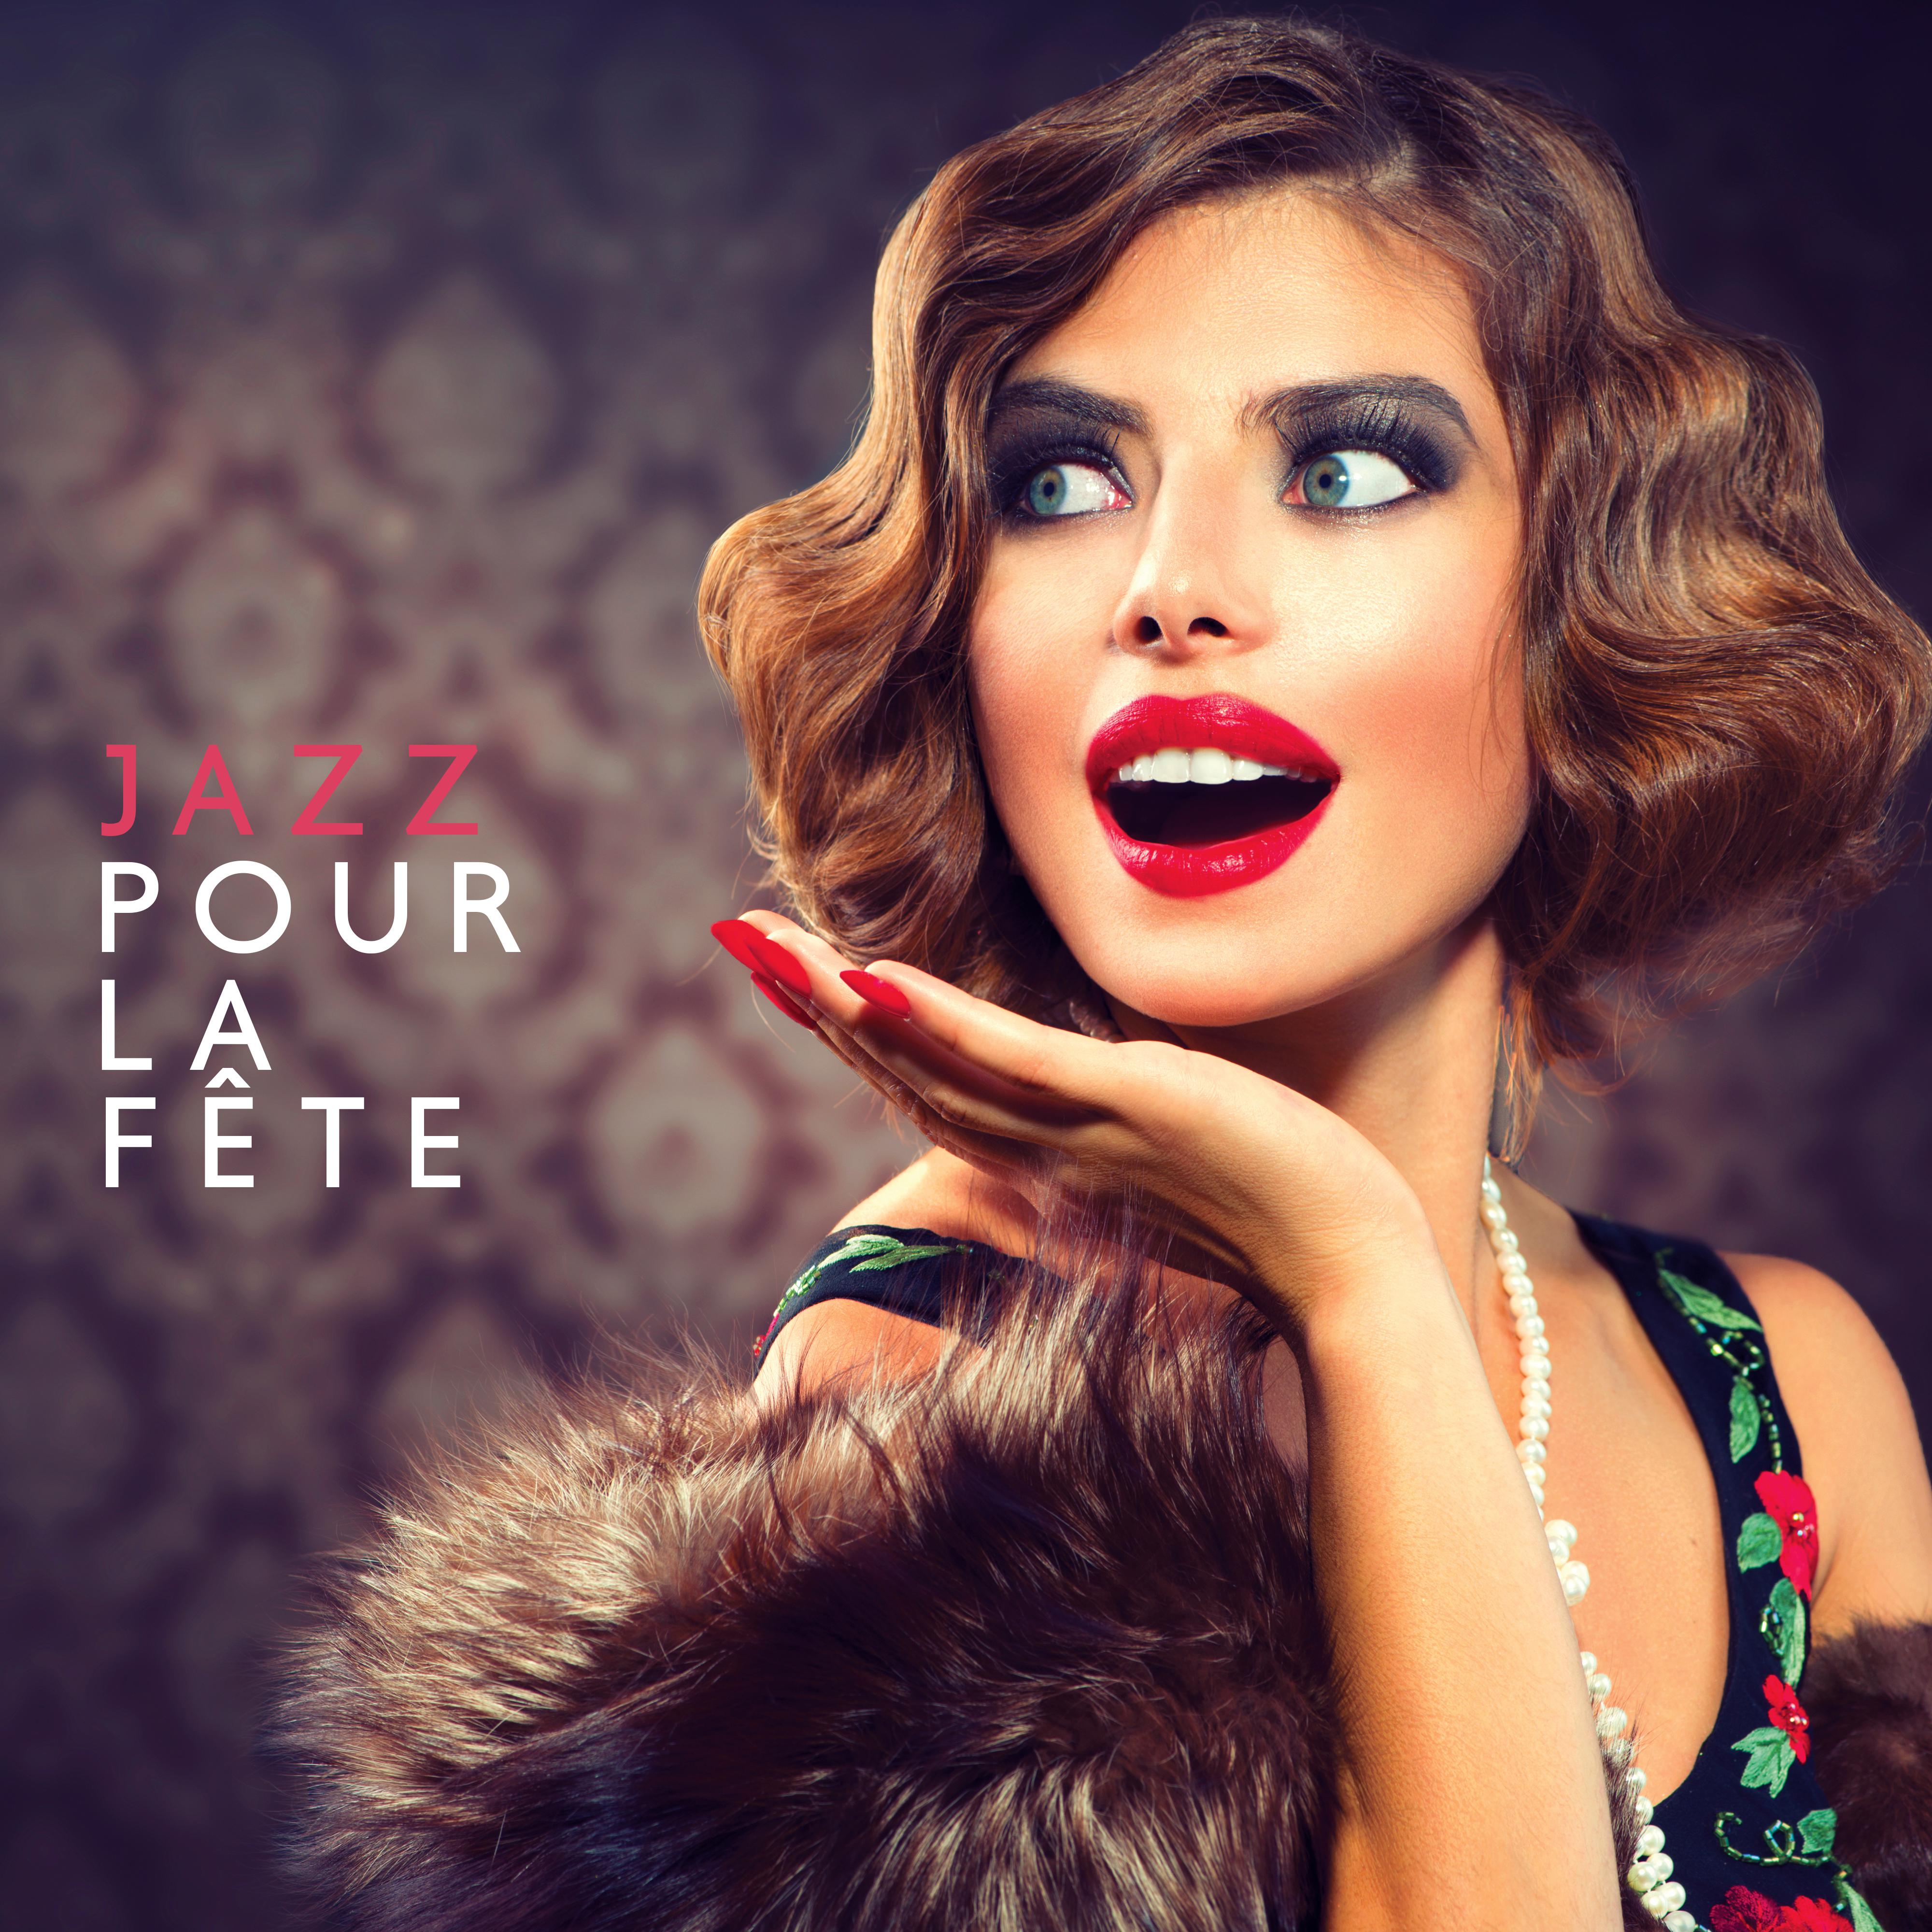 Jazz pour la f te  Succe s du parti, Jazz de nuit, Chansons instrumentales, Jazz relaxant 2019